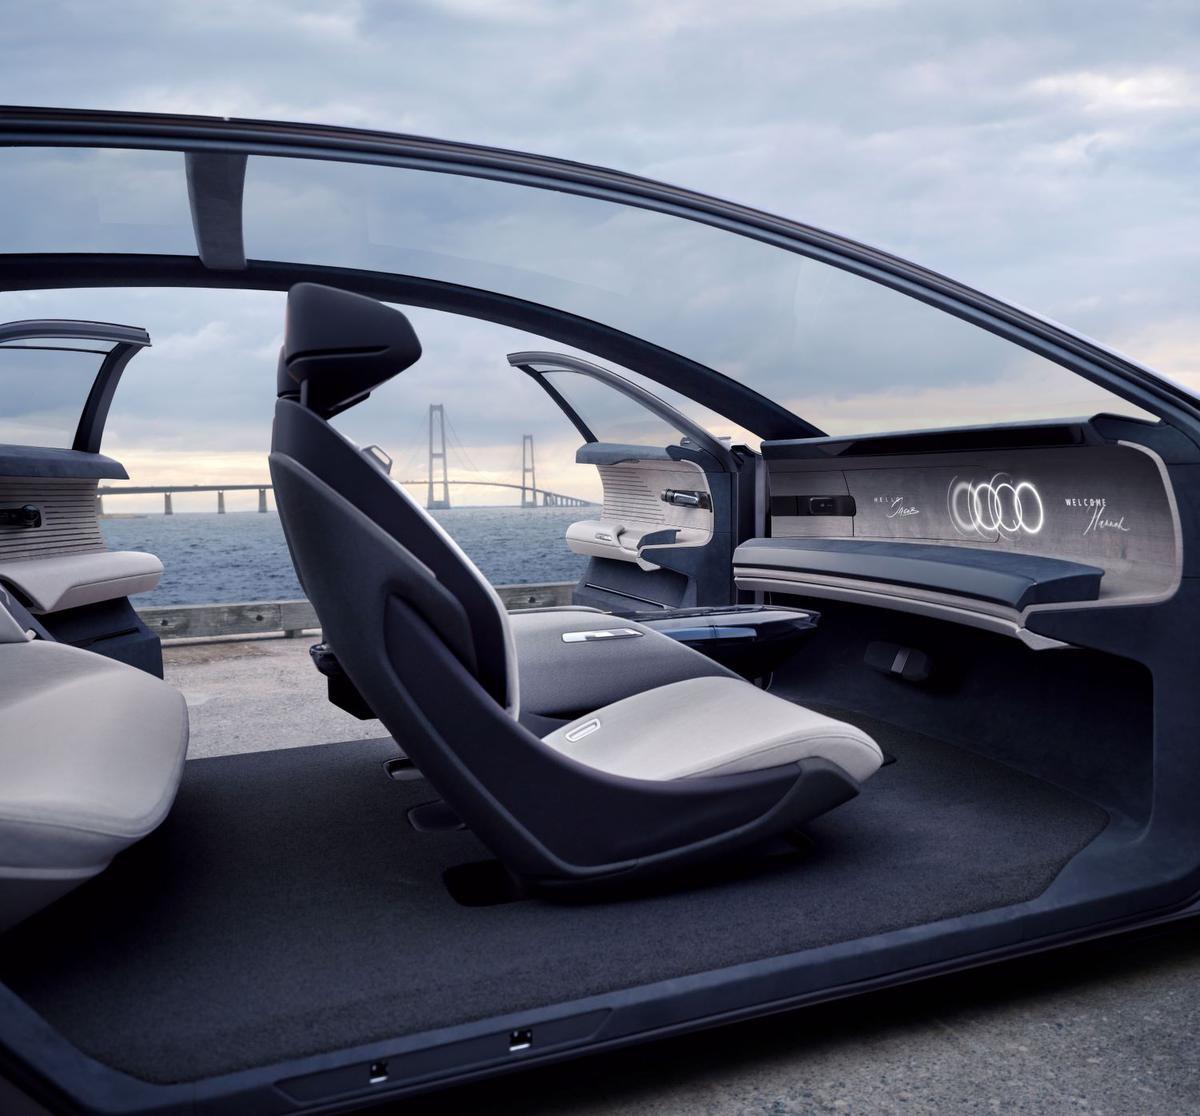 Audi grandsphere concept : en première classe vers l'avenir